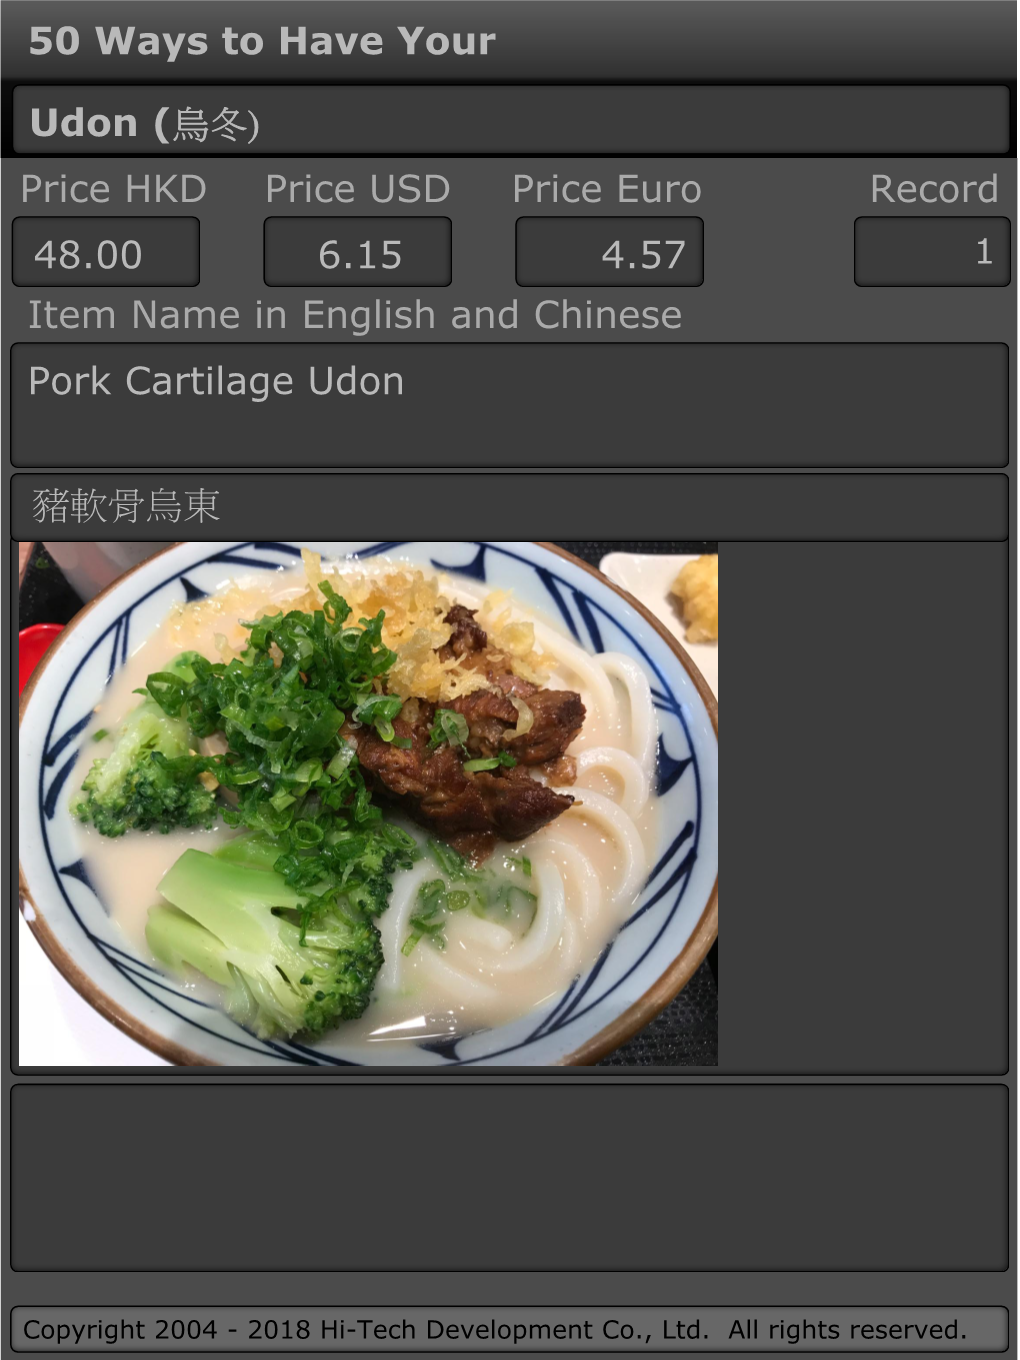 烏冬) Price HKD Price USD Price Euro Record 48.00 6.15 4.57 1 Item Name in English and Chinese Pork Cartilage Udon